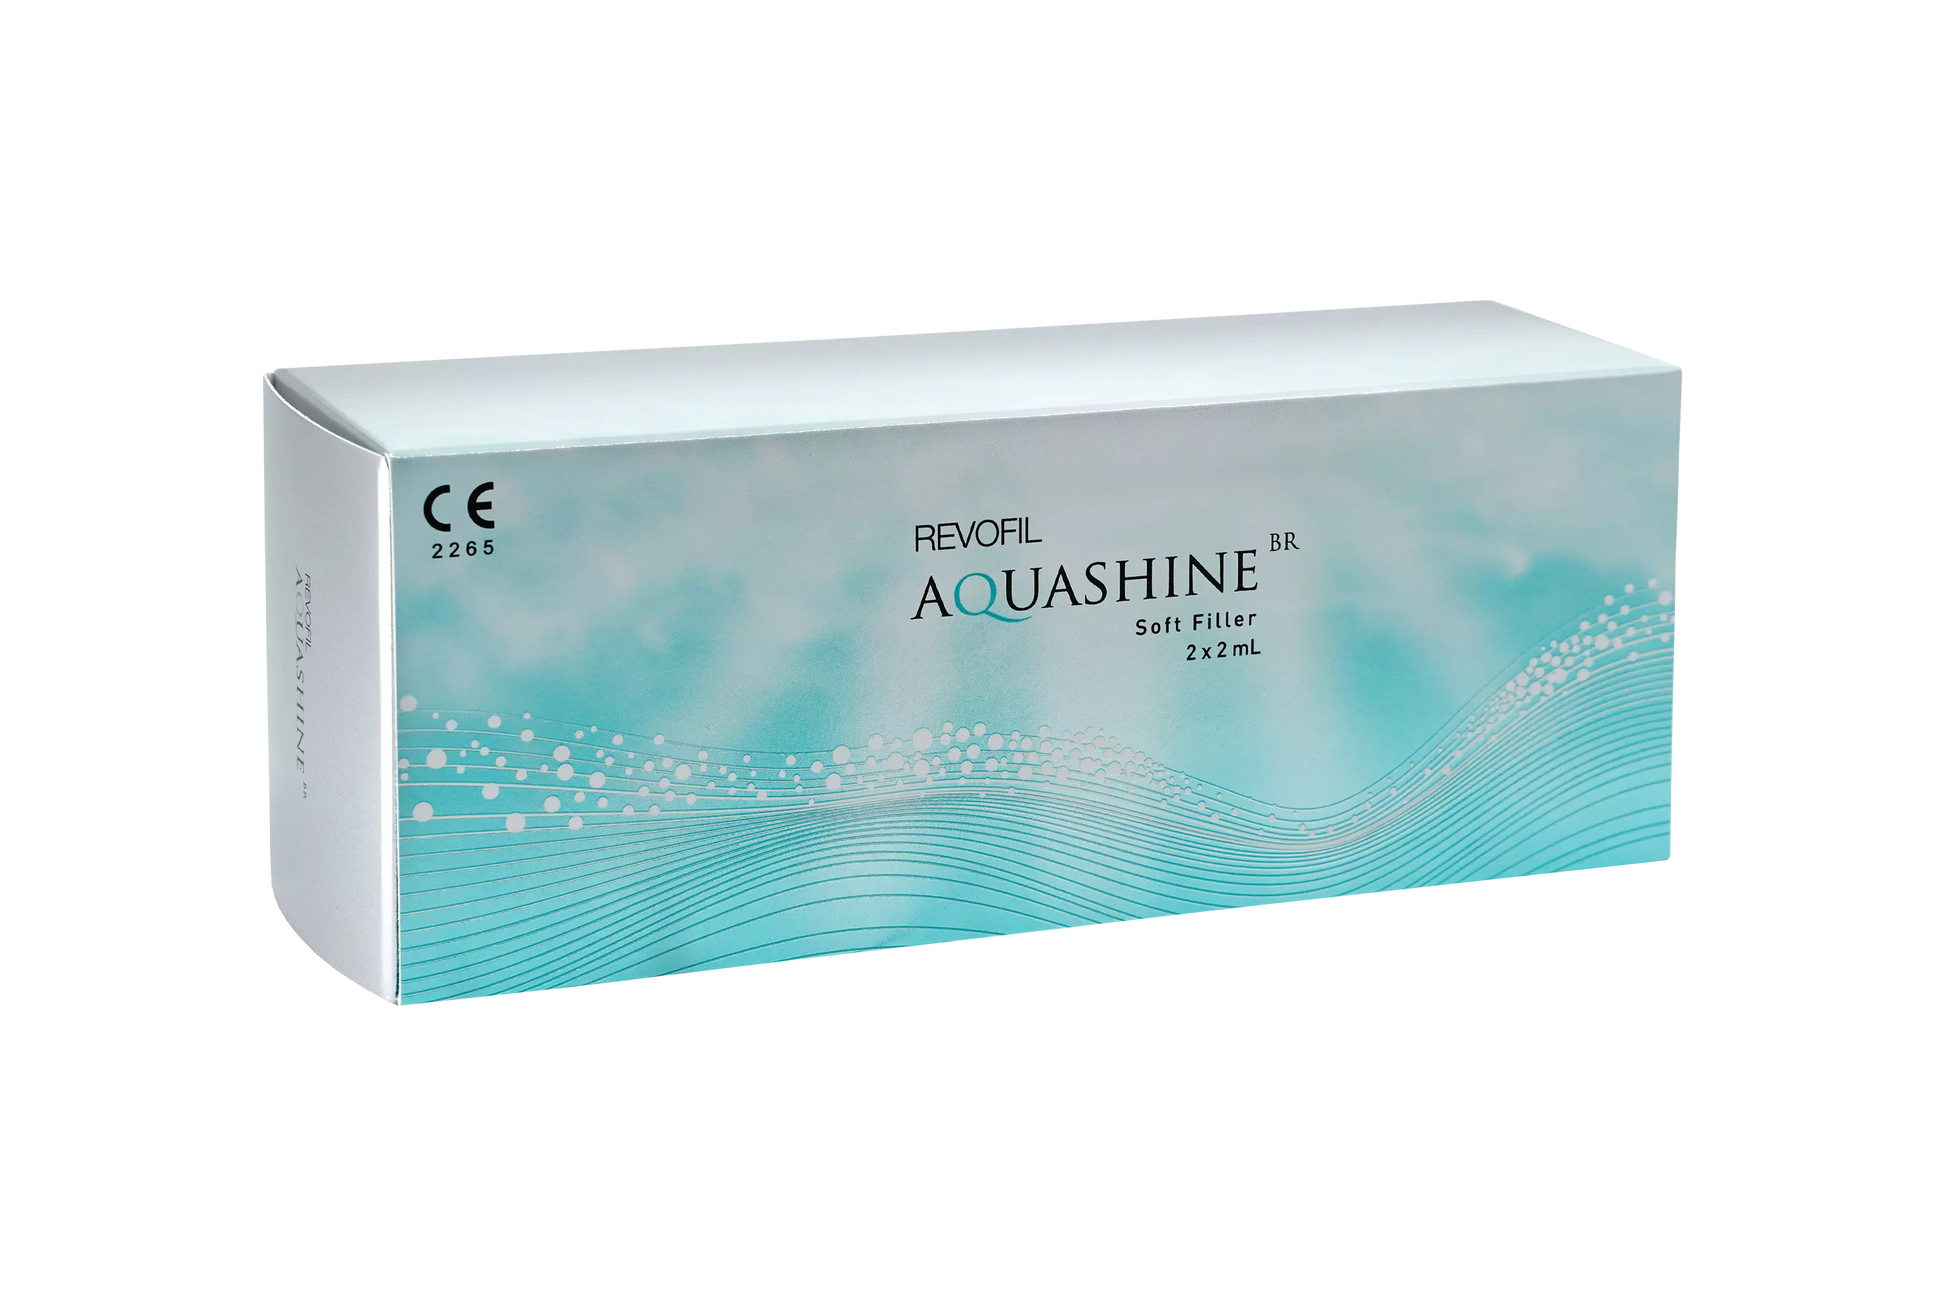 Aquashine BR Soft Filler zur ästhetischen Mesotherapie Produktbild vorne